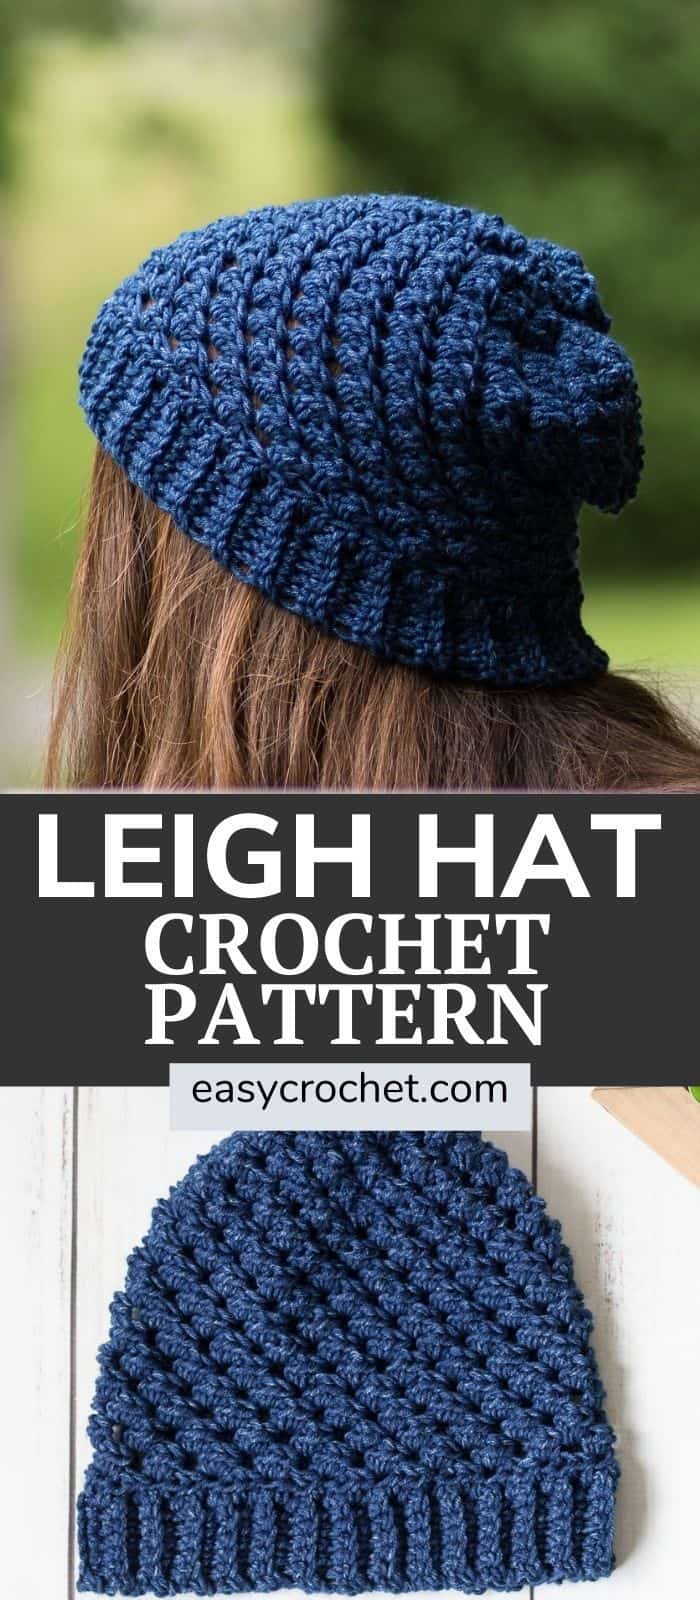 Leigh Hat Crochet Pattern - free #hatnothate crochet pattern for Lion Brand Yarn via @easycrochetcom